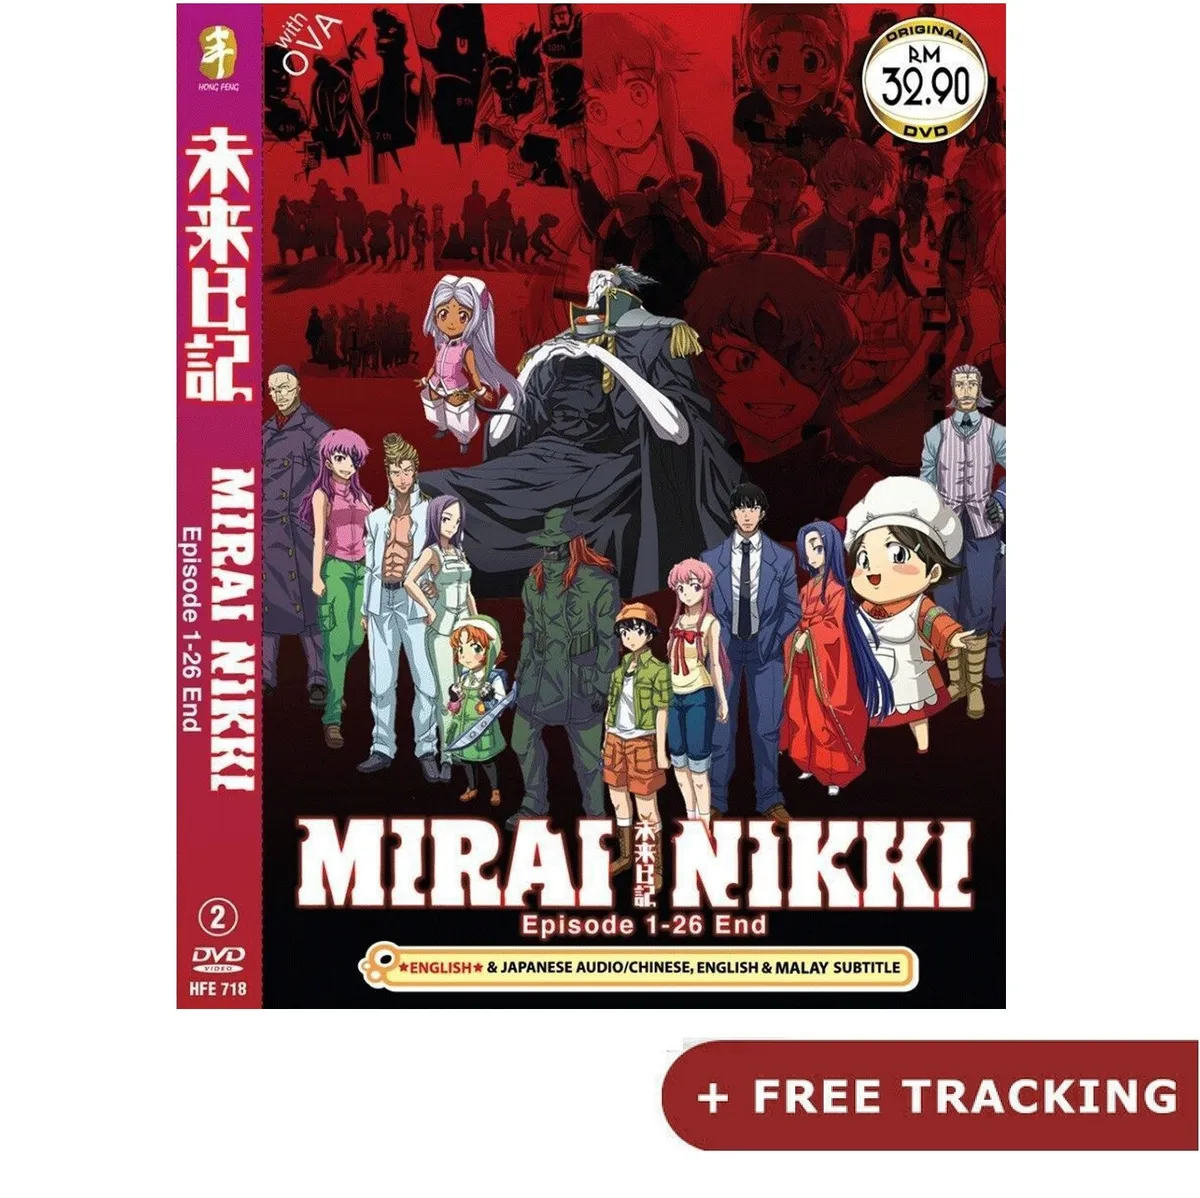 Best of Mirai nikki eng dub